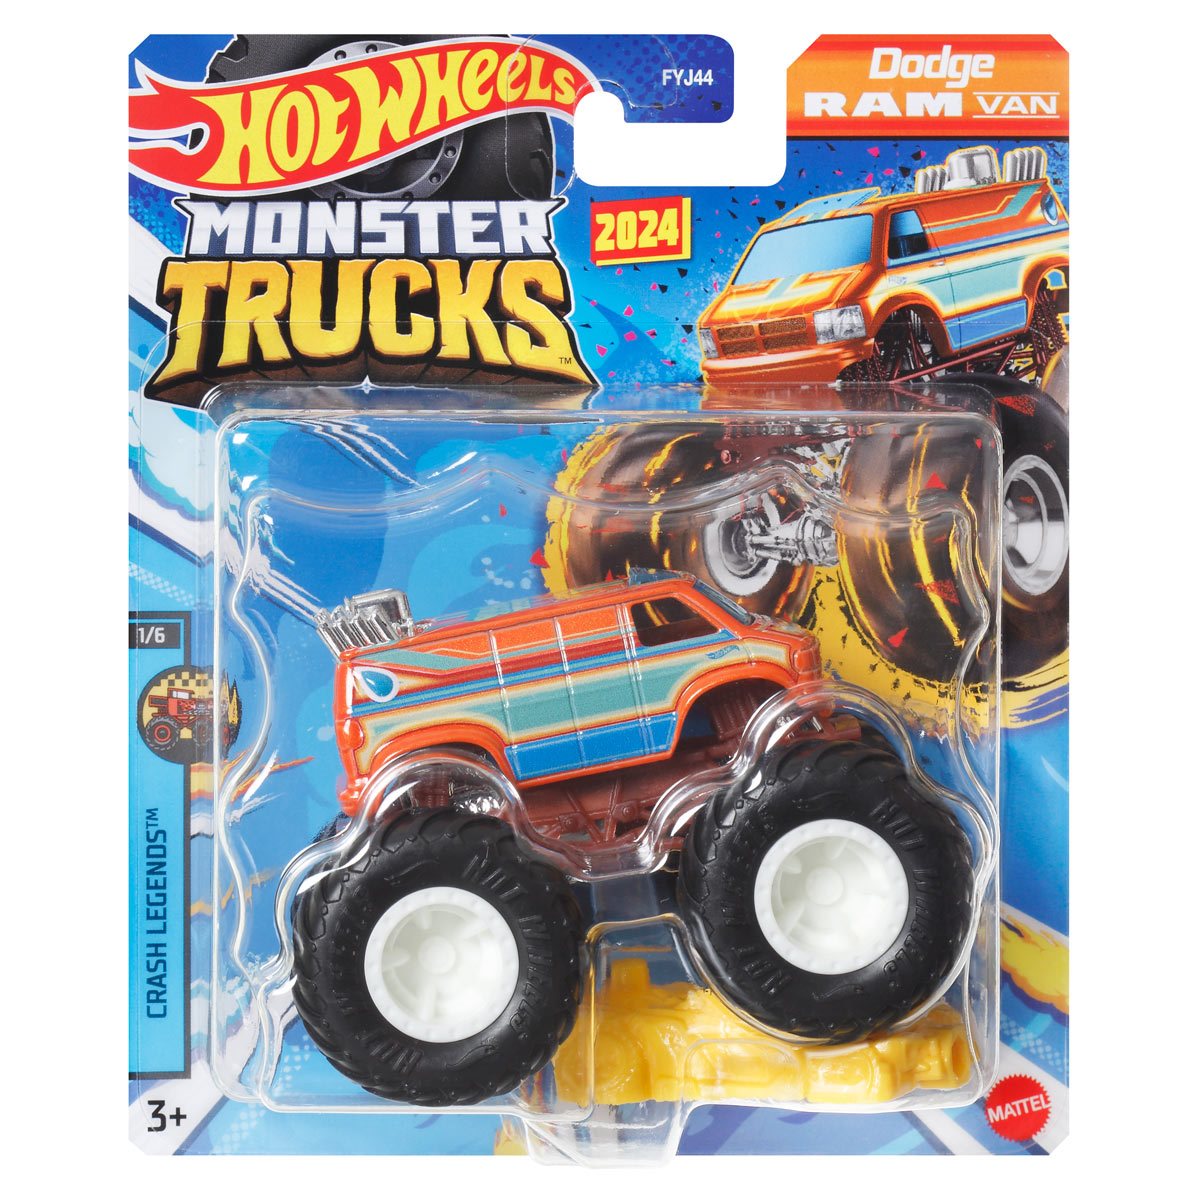 Carrinho Hot Wheels Monster Truck Mega Wrex 1:64 - Mattel em